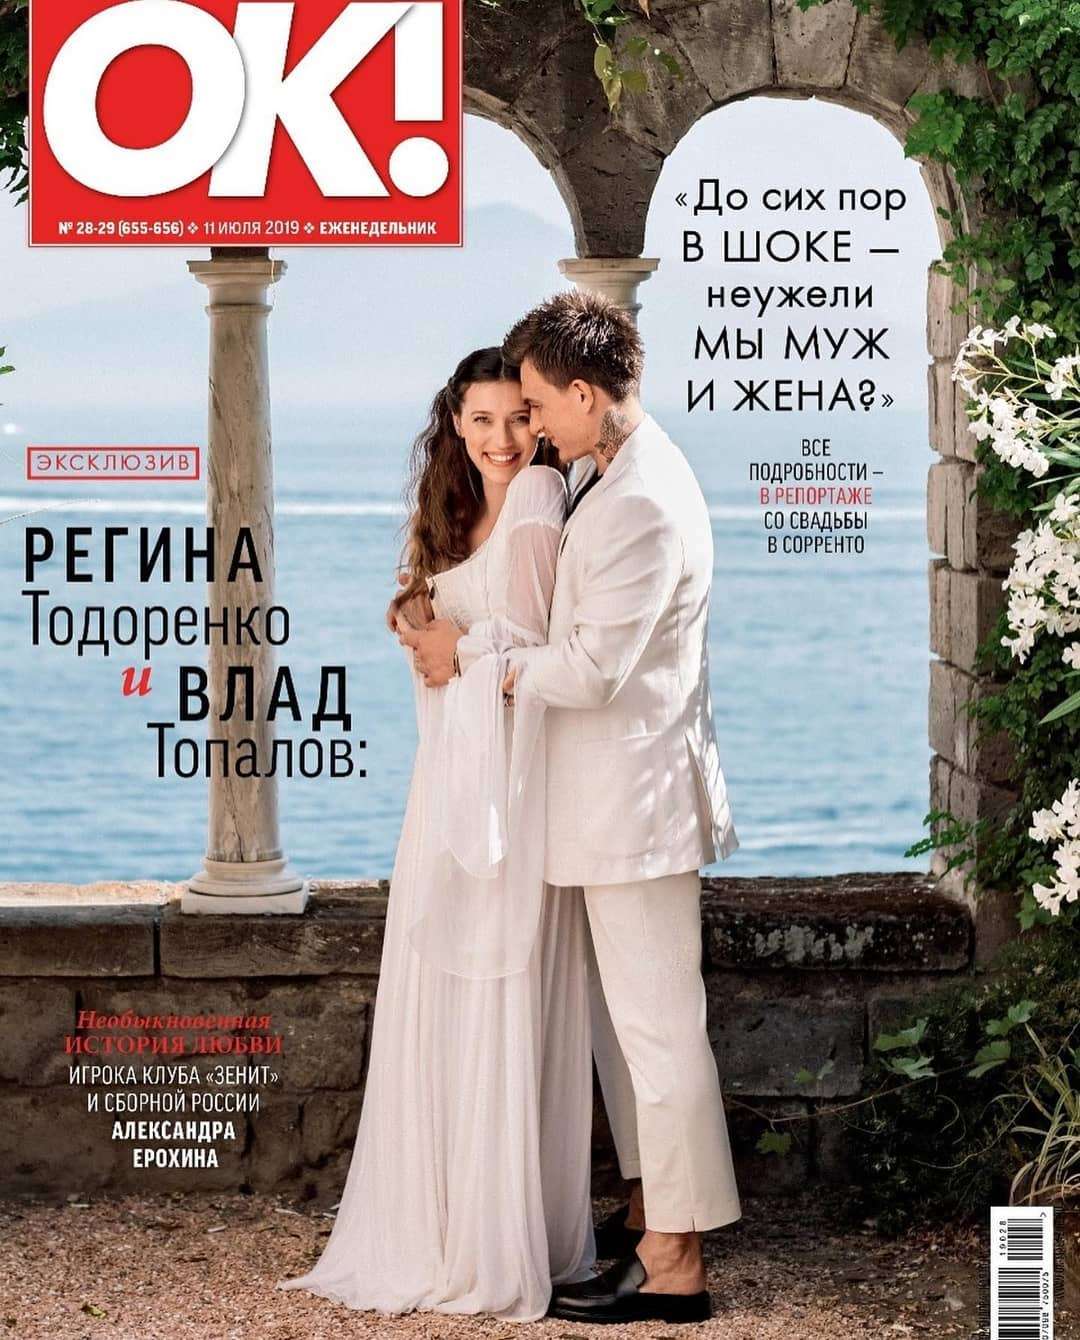 Регіна Тодоренко замилувала мережу офіційними фото свого зіркового весілля - фото 441303